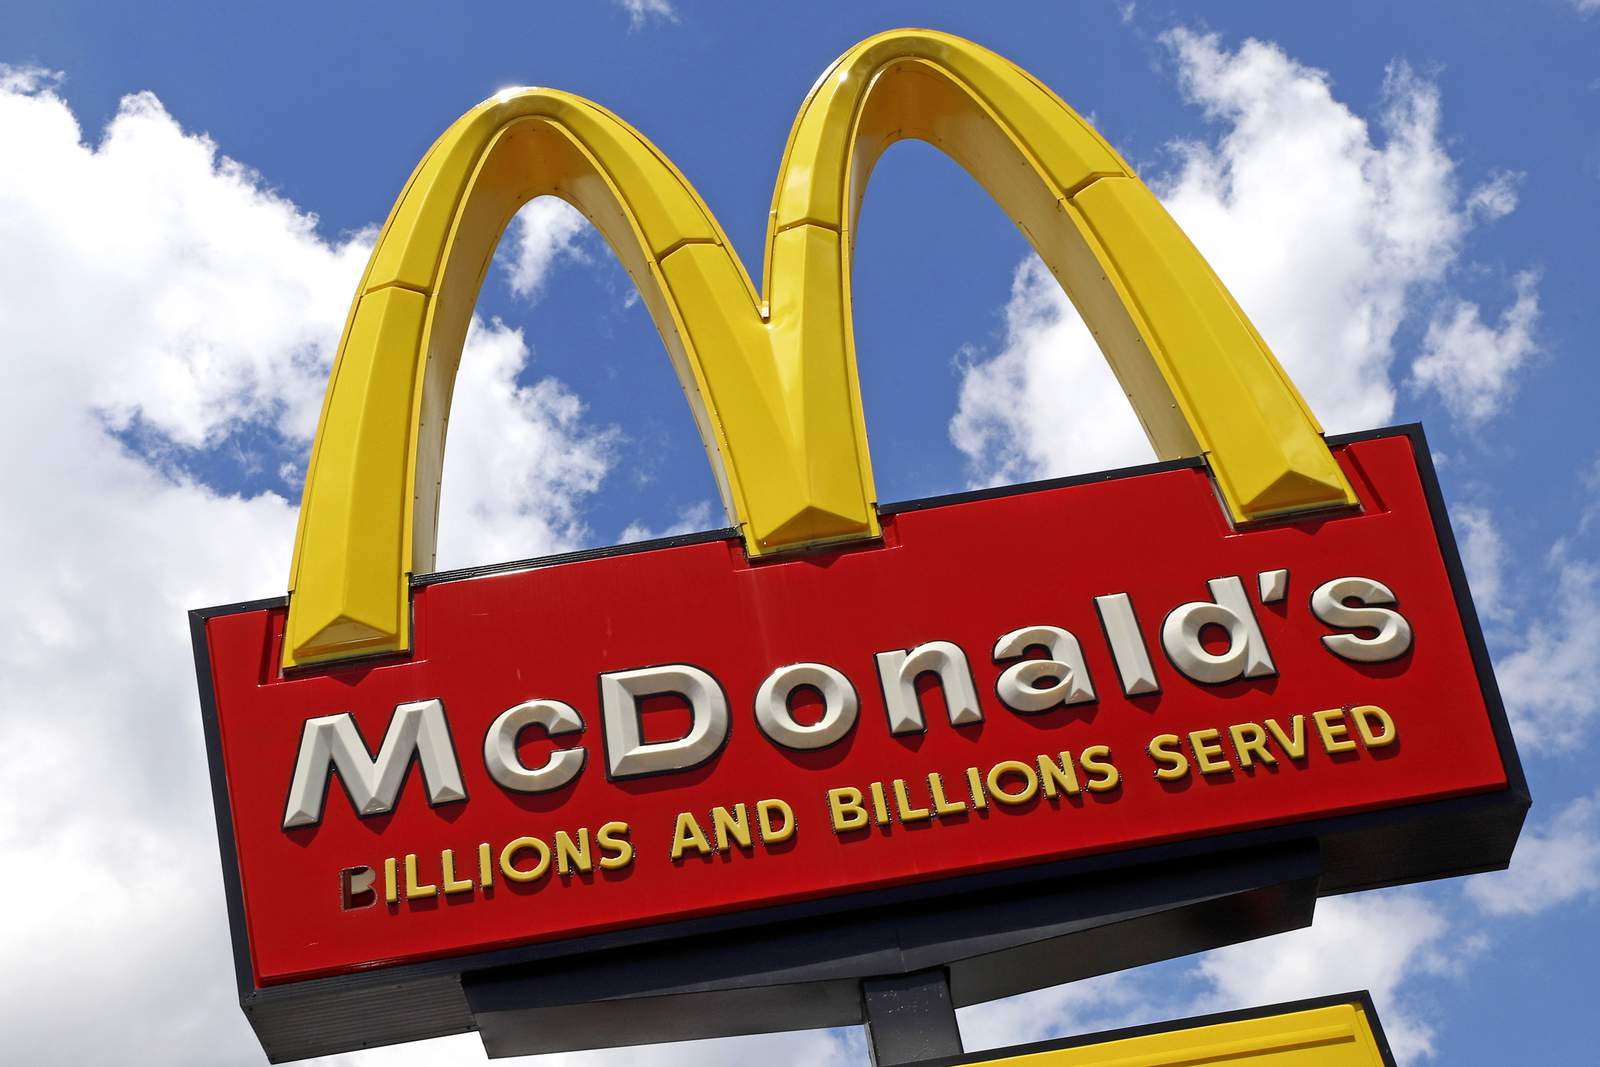 52 Black former franchisees sue McDonalds for discrimination